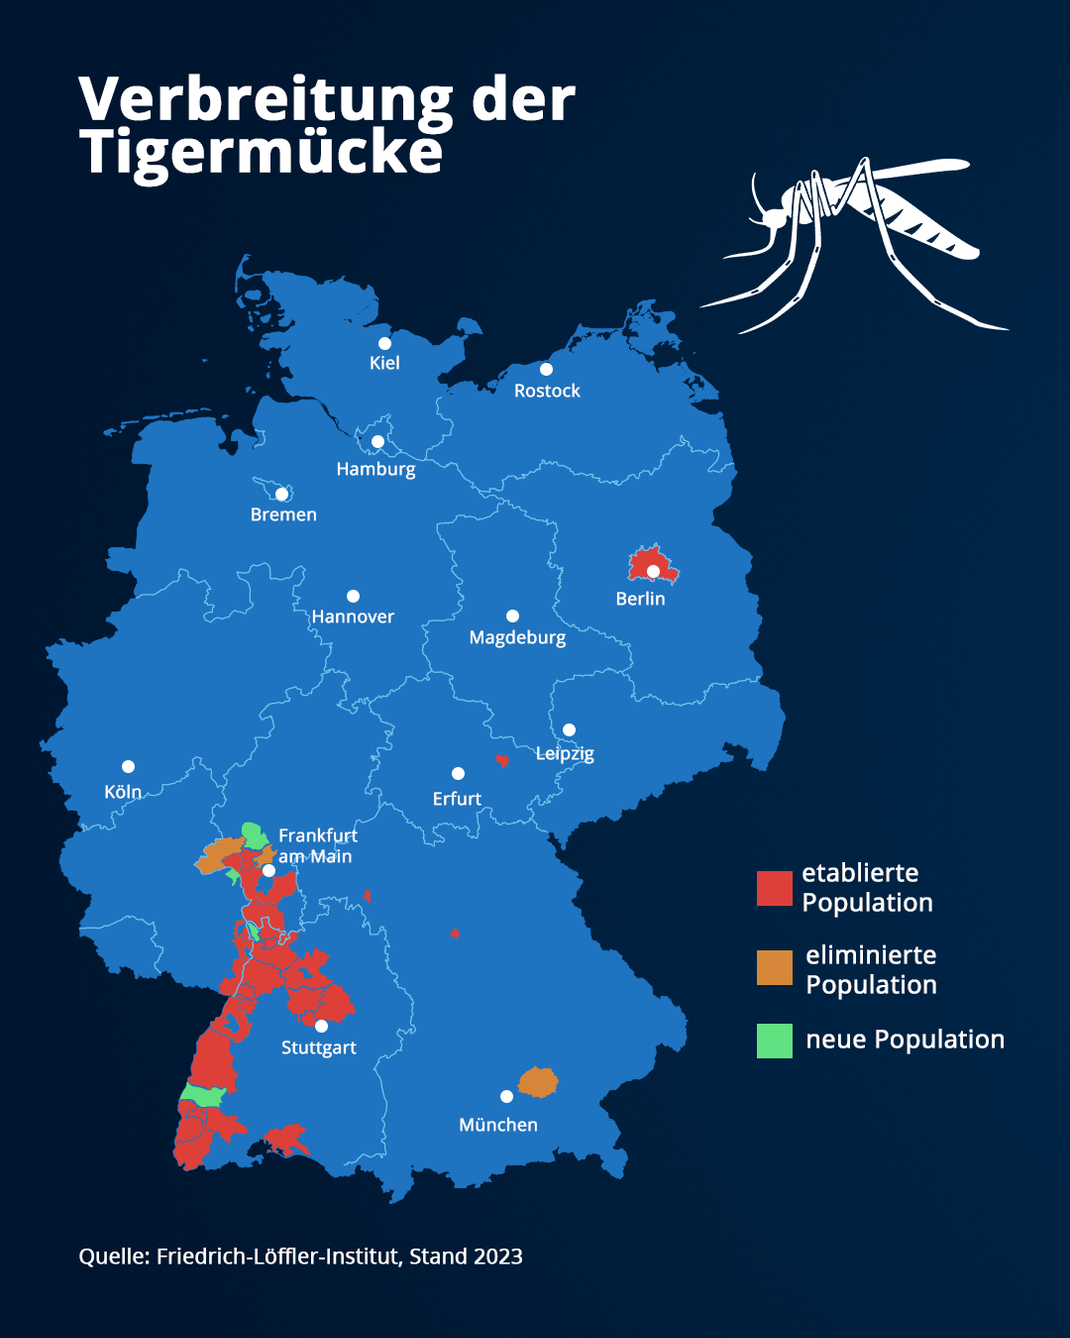 In diese Bereichen Deutschlands wurde die Tigermücke bis Ende 2023 gesichtet. Einige Populationen konnten eliminiert werden, andere kamen dagegen neu hinzu.